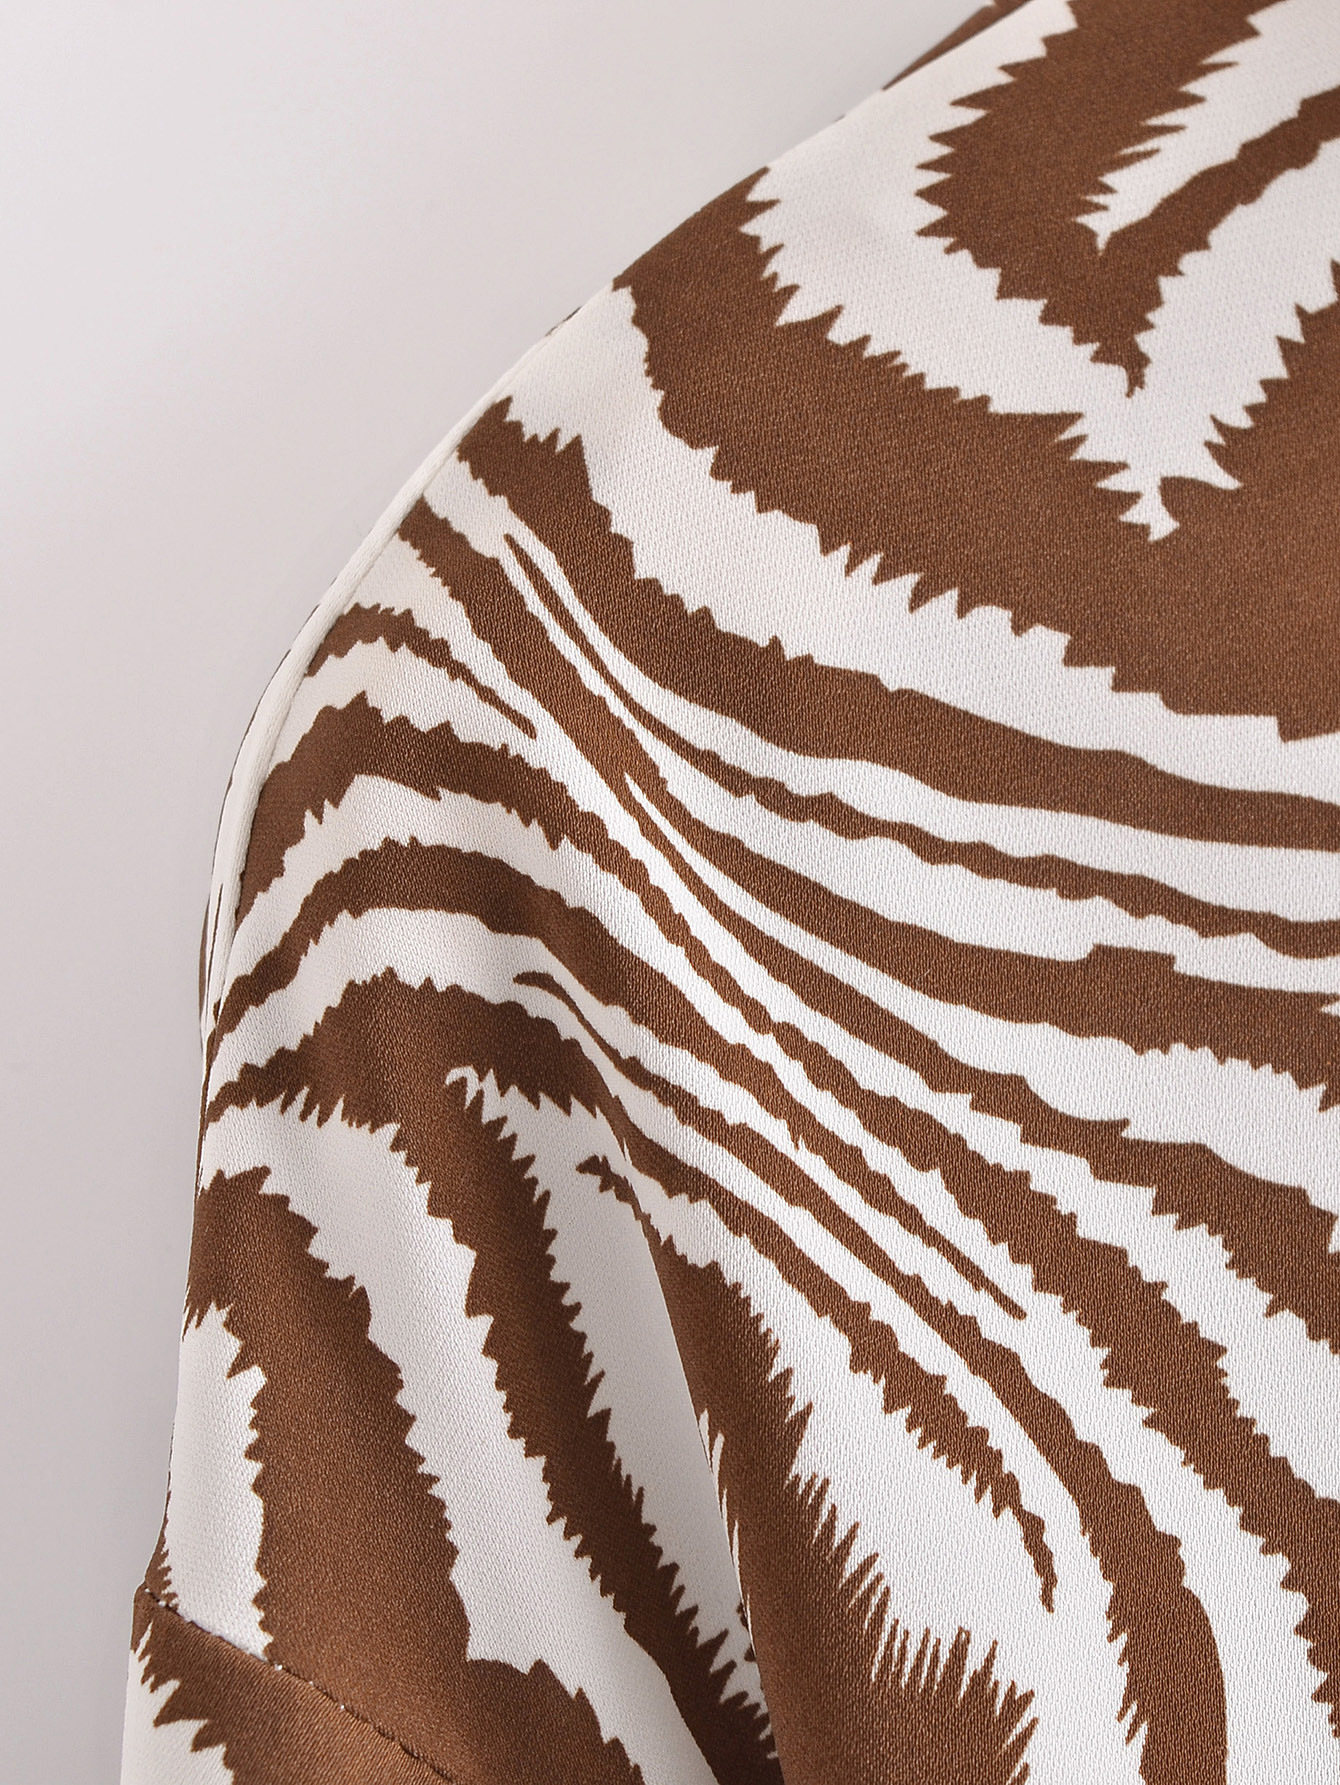 Long-Sleeved Brown Zebra Print Shirt NSBRF101292